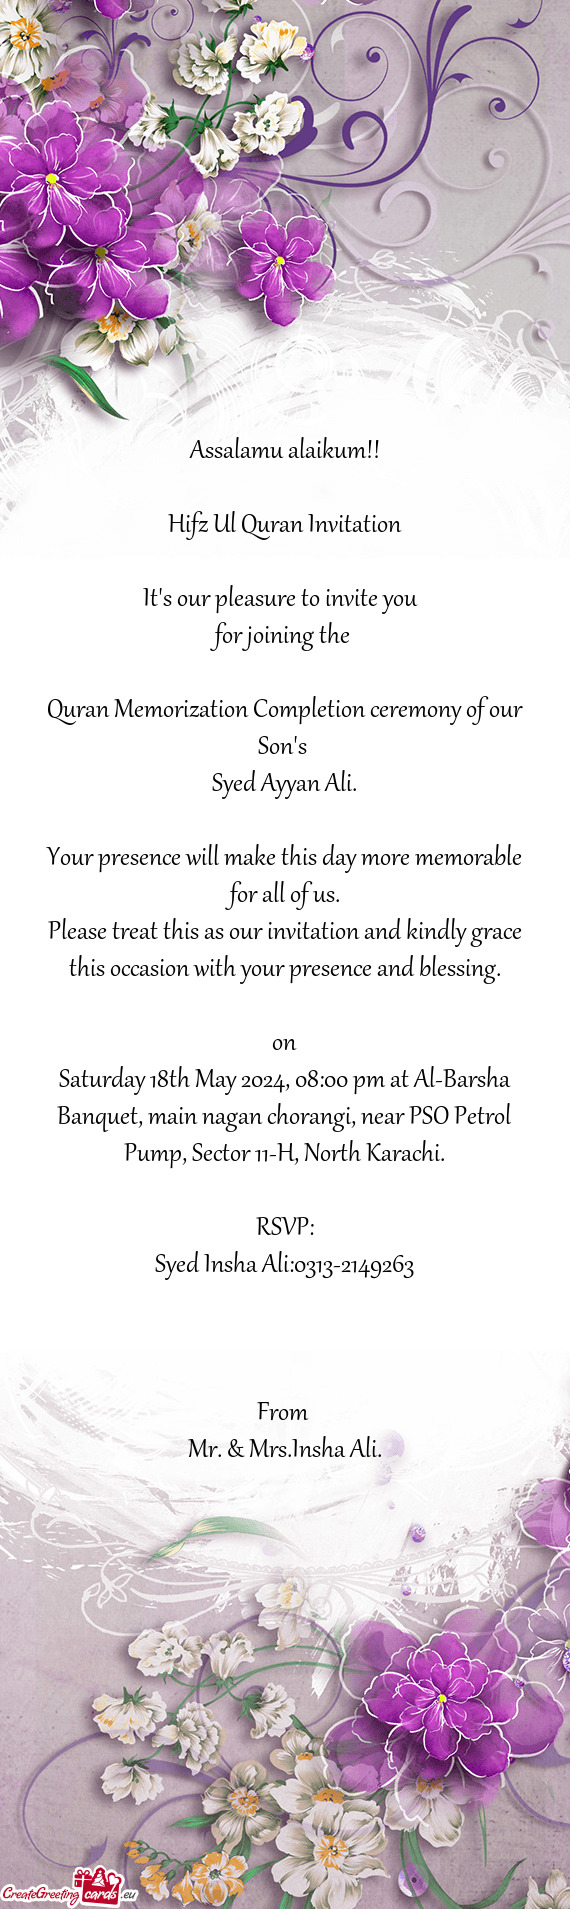 Saturday 18th May 2024, 08:00 pm at Al-Barsha Banquet, main nagan chorangi, near PSO Petrol Pump, Se